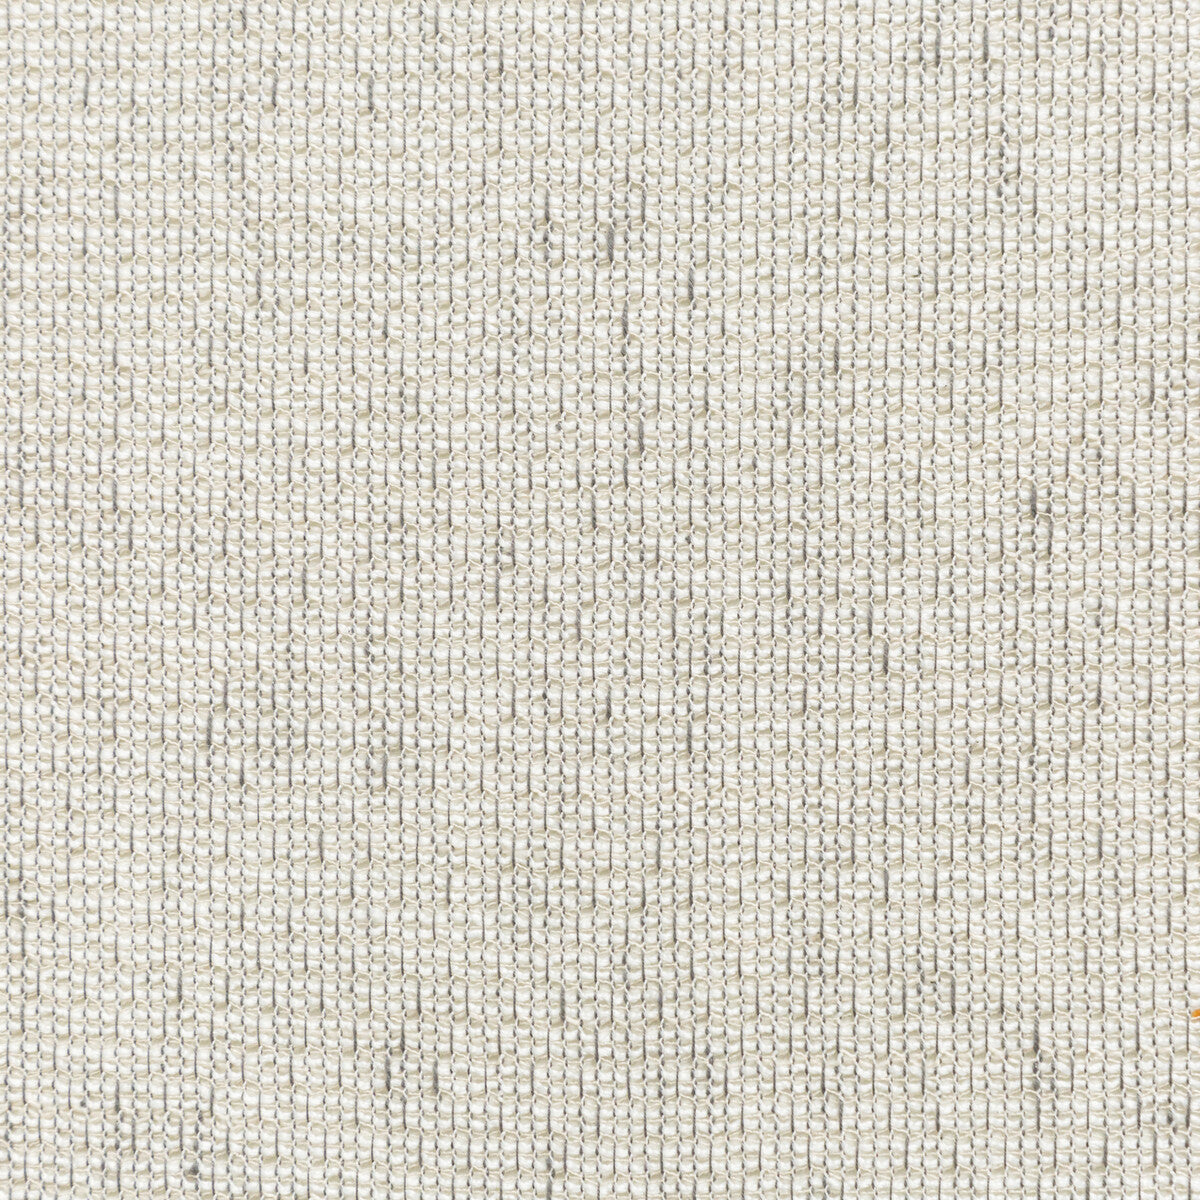 Kravet Basics fabric in 4676-11 color - pattern 4676.11.0 - by Kravet Basics